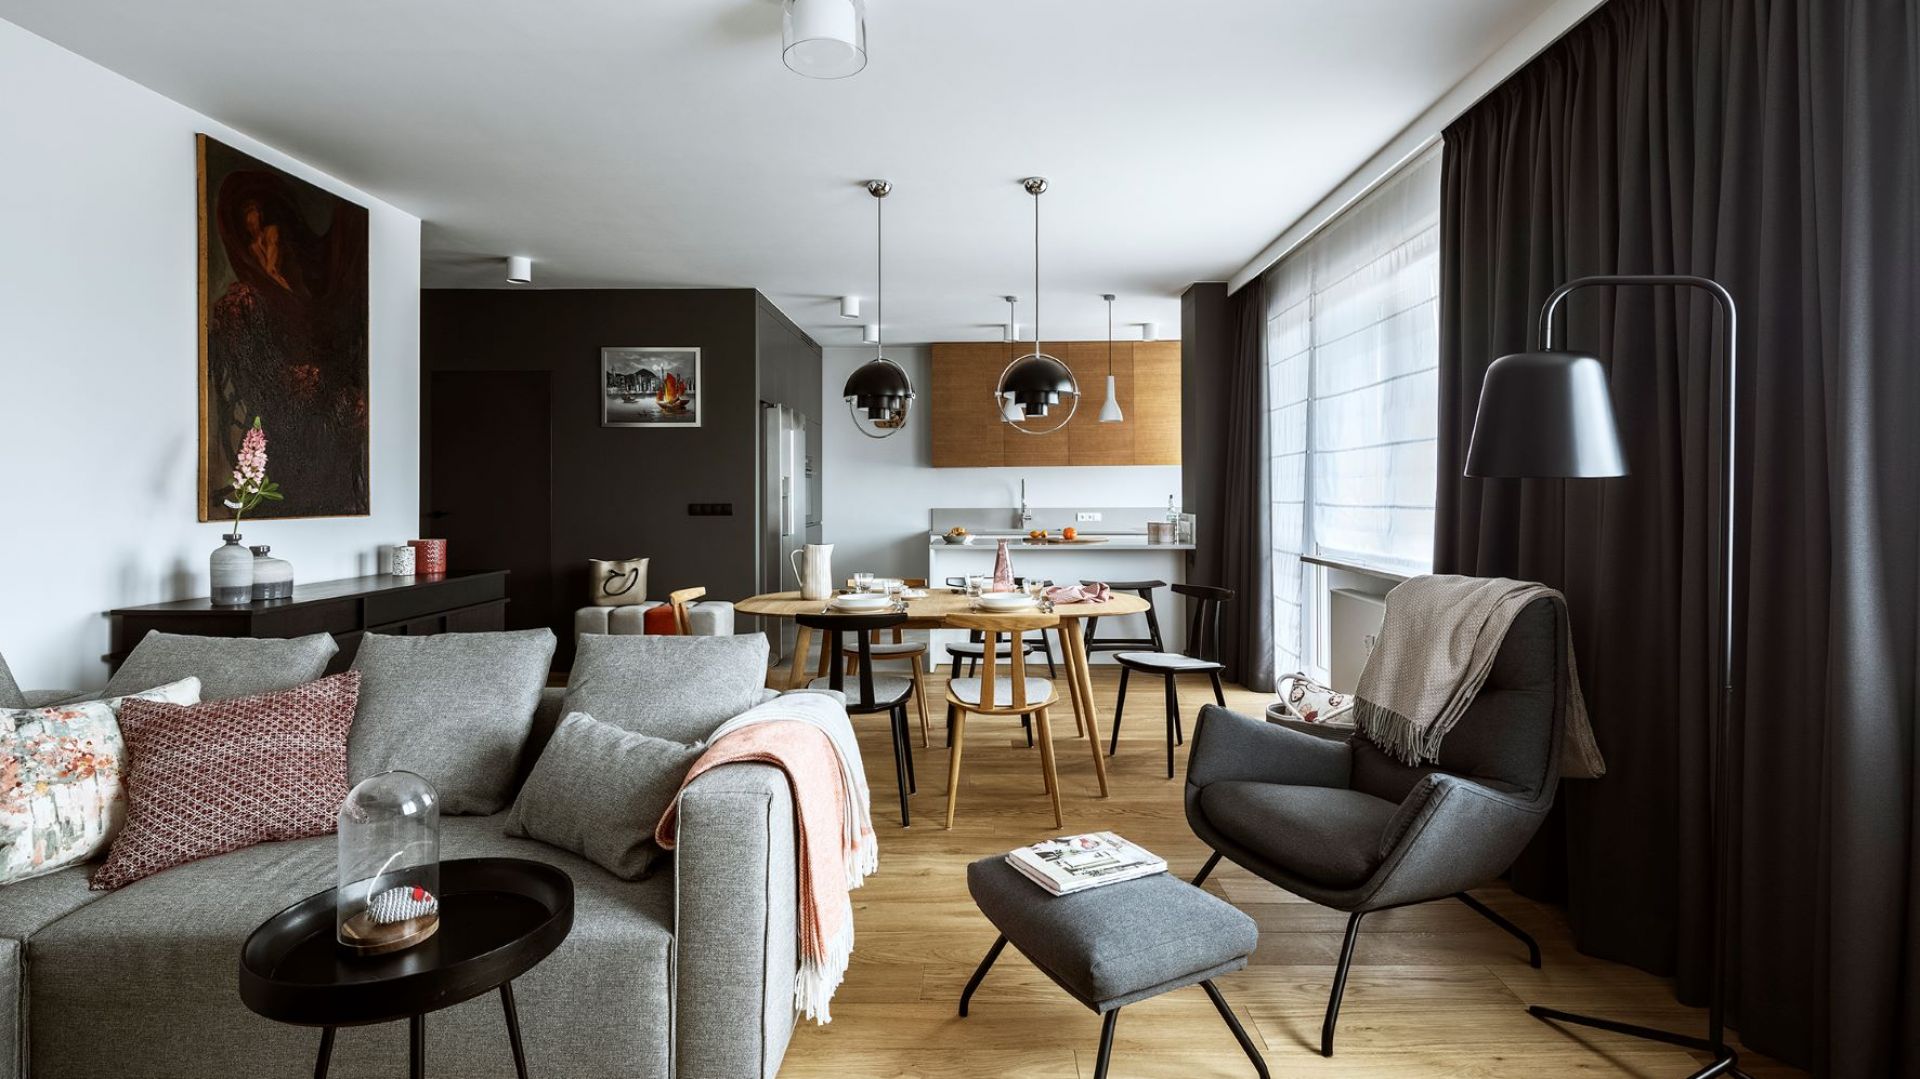 110-metrowe mieszkanie w Warszawie. Piękny salon, a w nim półki dla kotów!